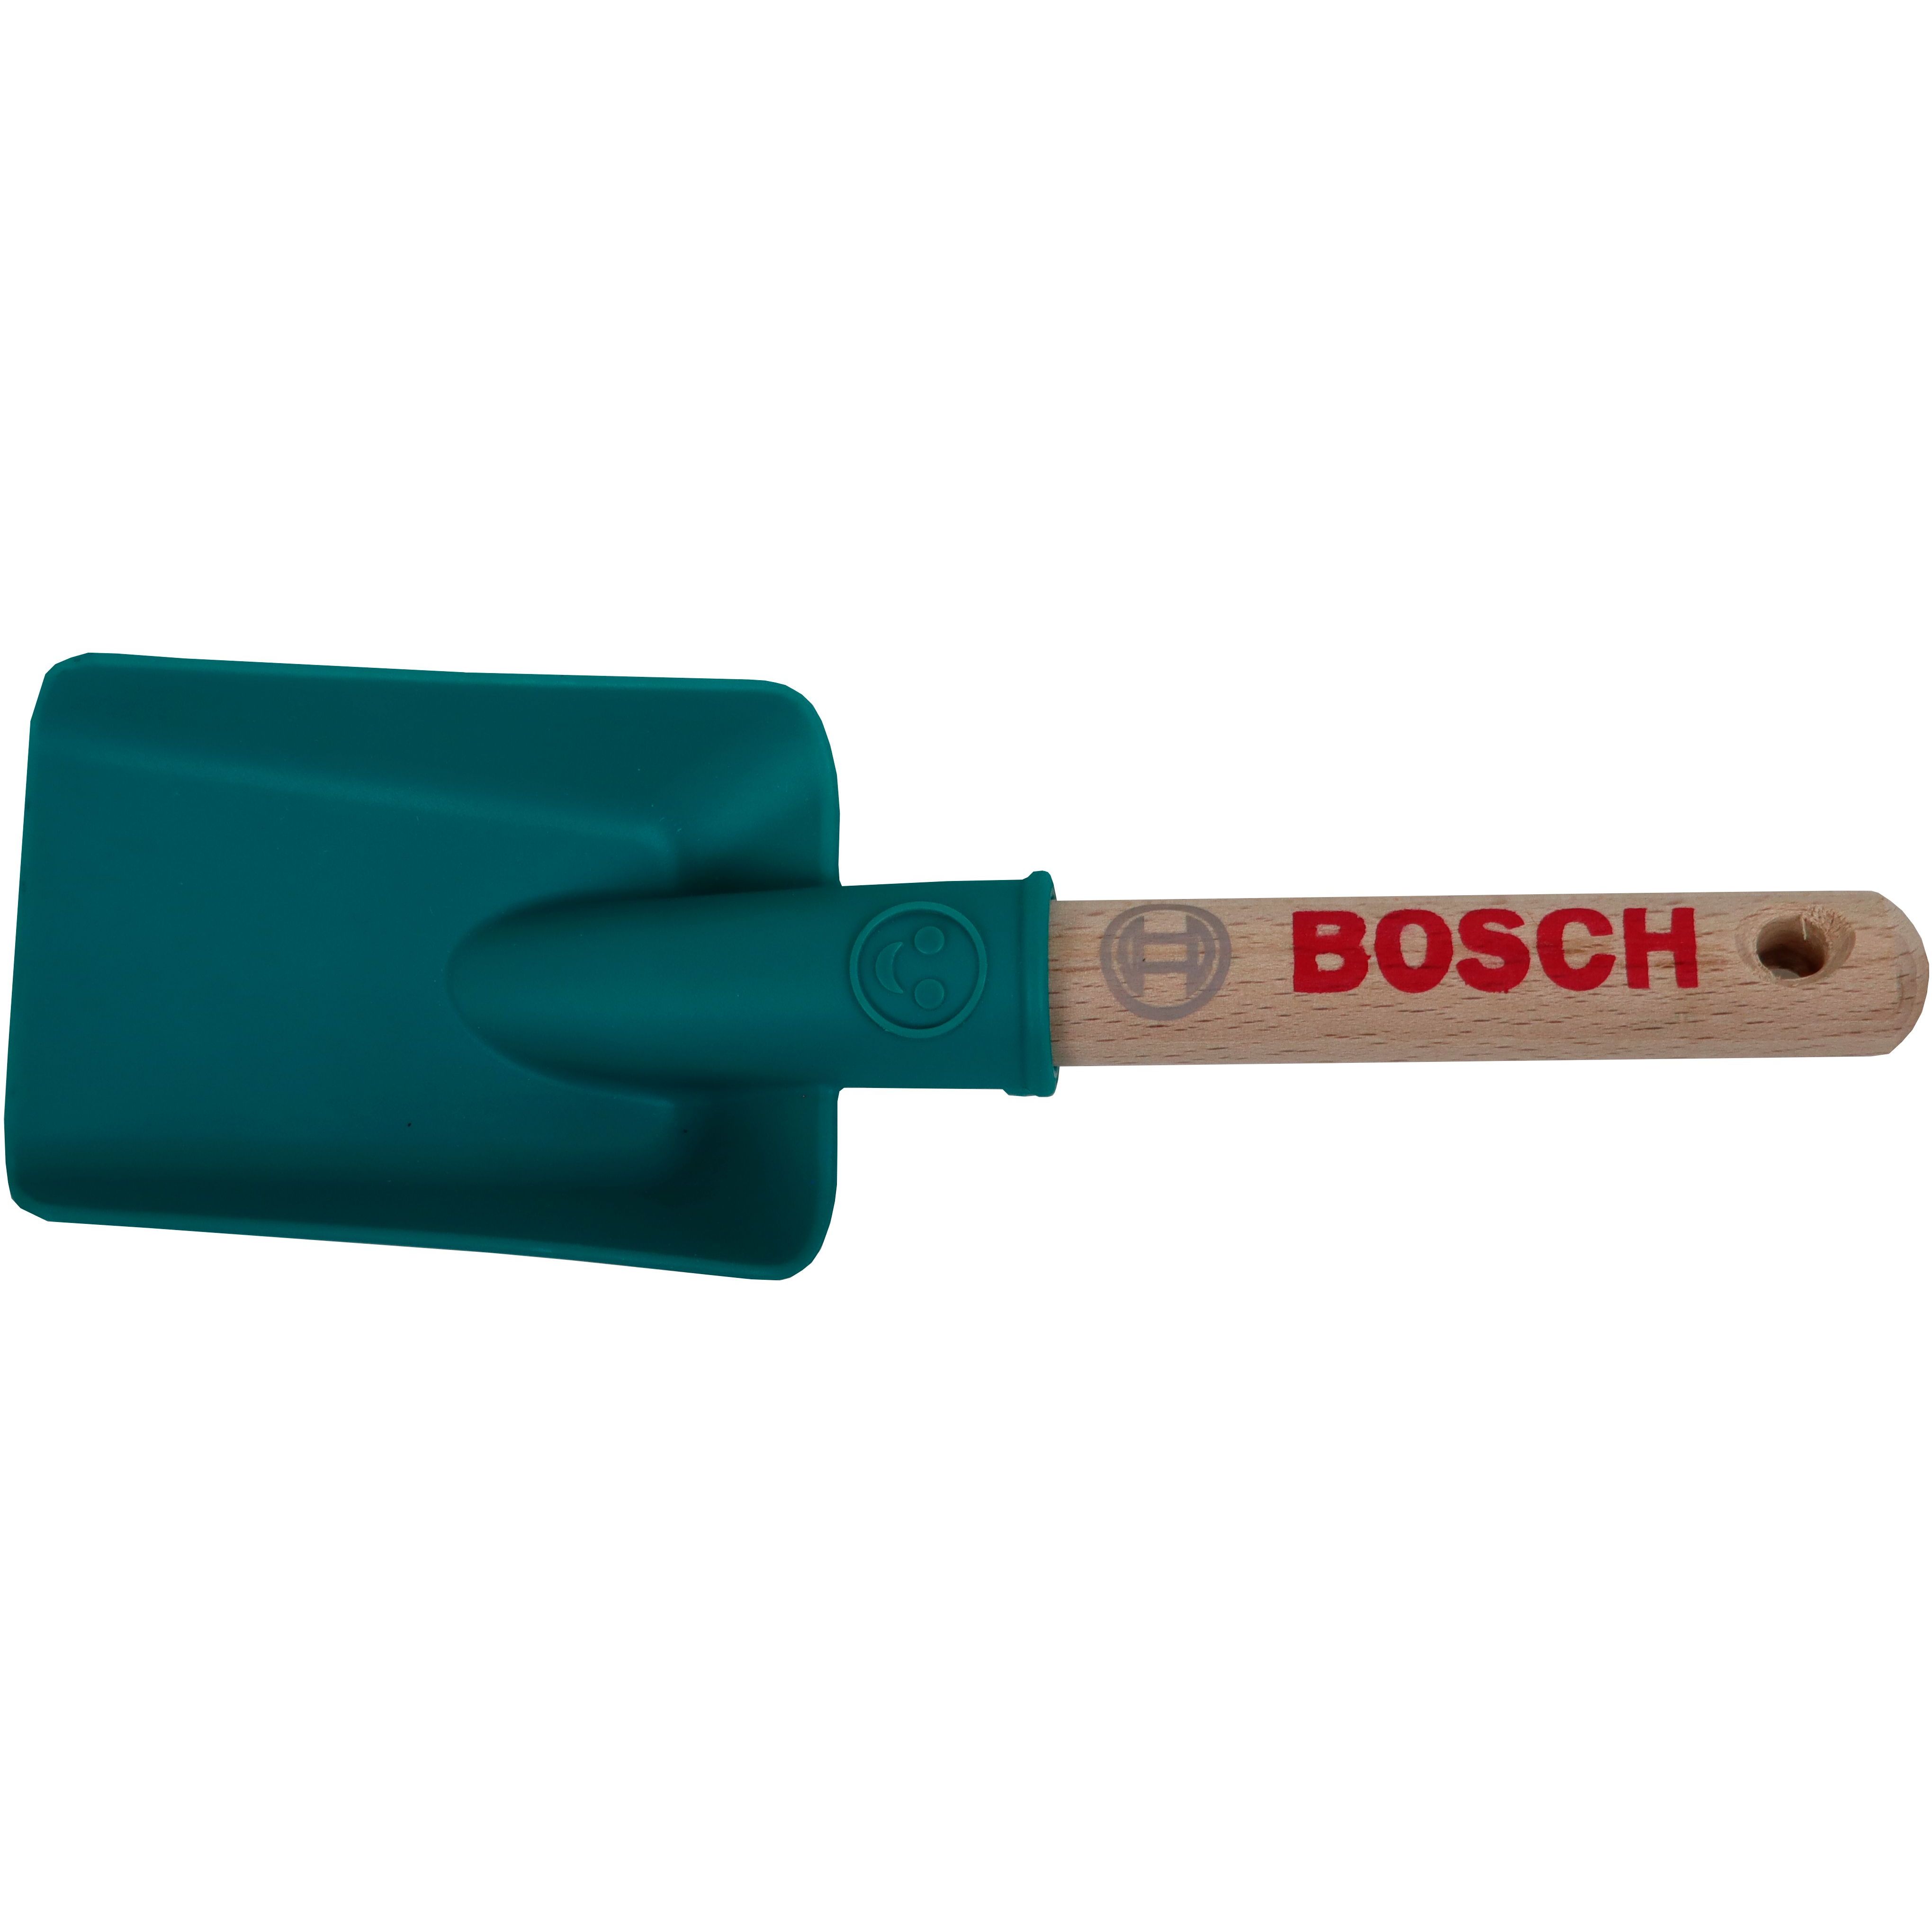 Игрушечный садовый набор Bosch Mini лопата ручная, короткая (2789) - фото 1